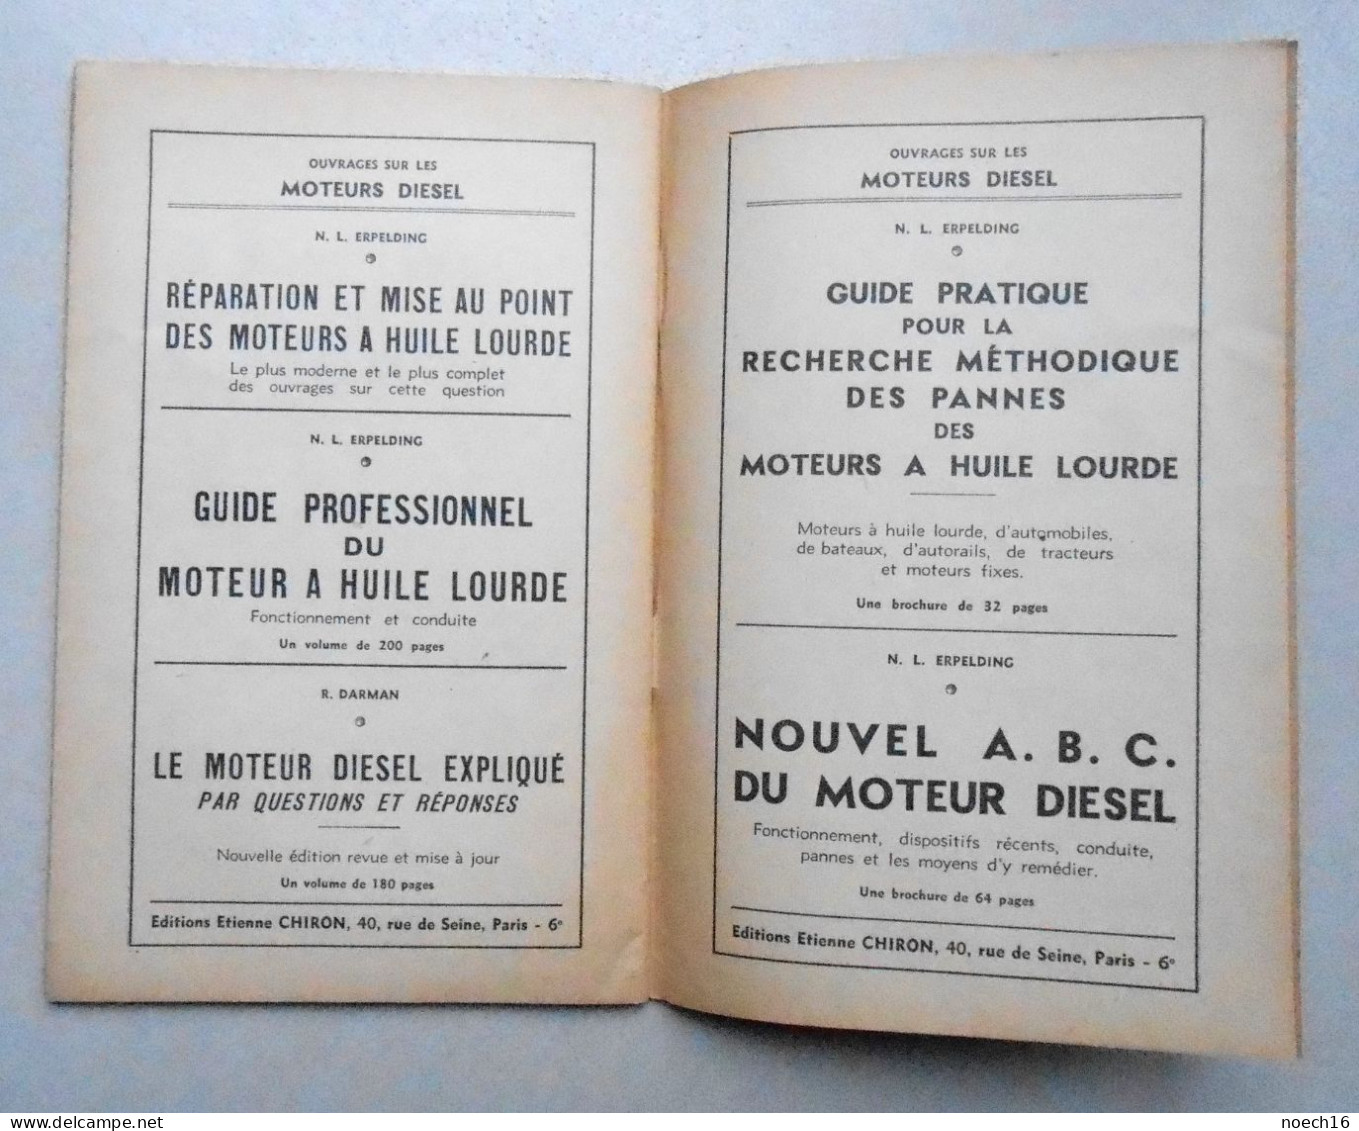 1947 Nouvel ABC de la Motocyclette, Max End. Editions Etienne Chiron Paris